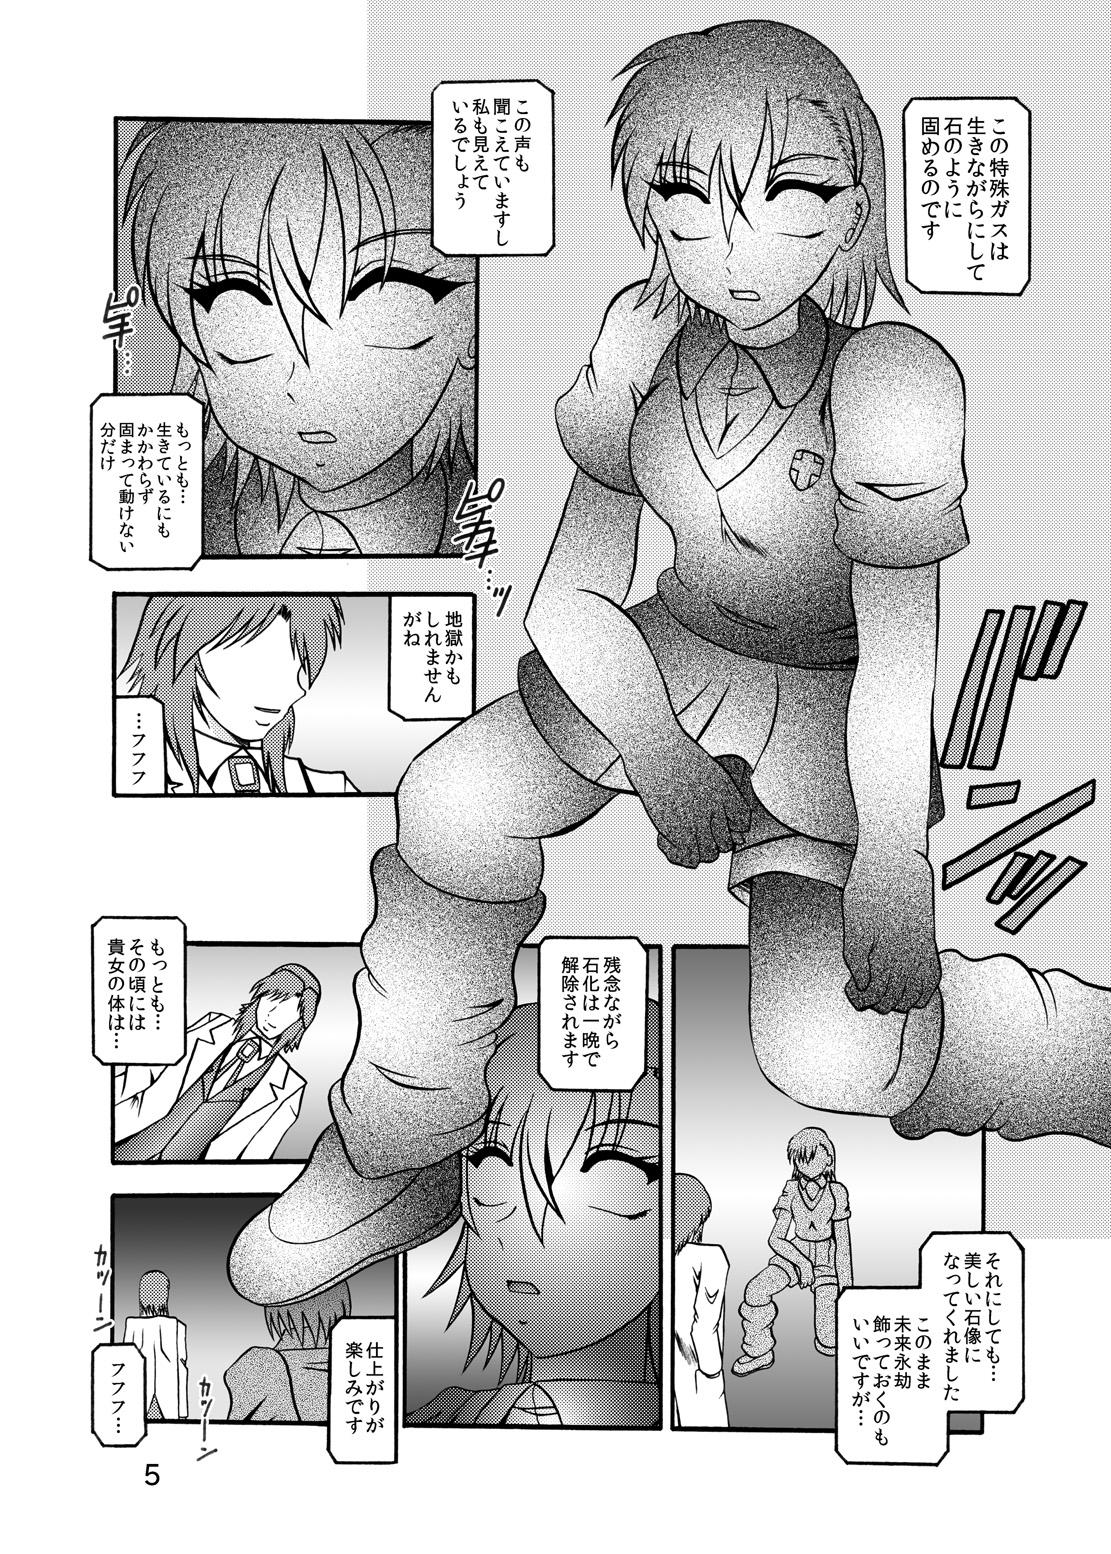 Rabo Inyoku Kaizou: Misaka Mikoto - Toaru kagaku no railgun Nylons - Page 3